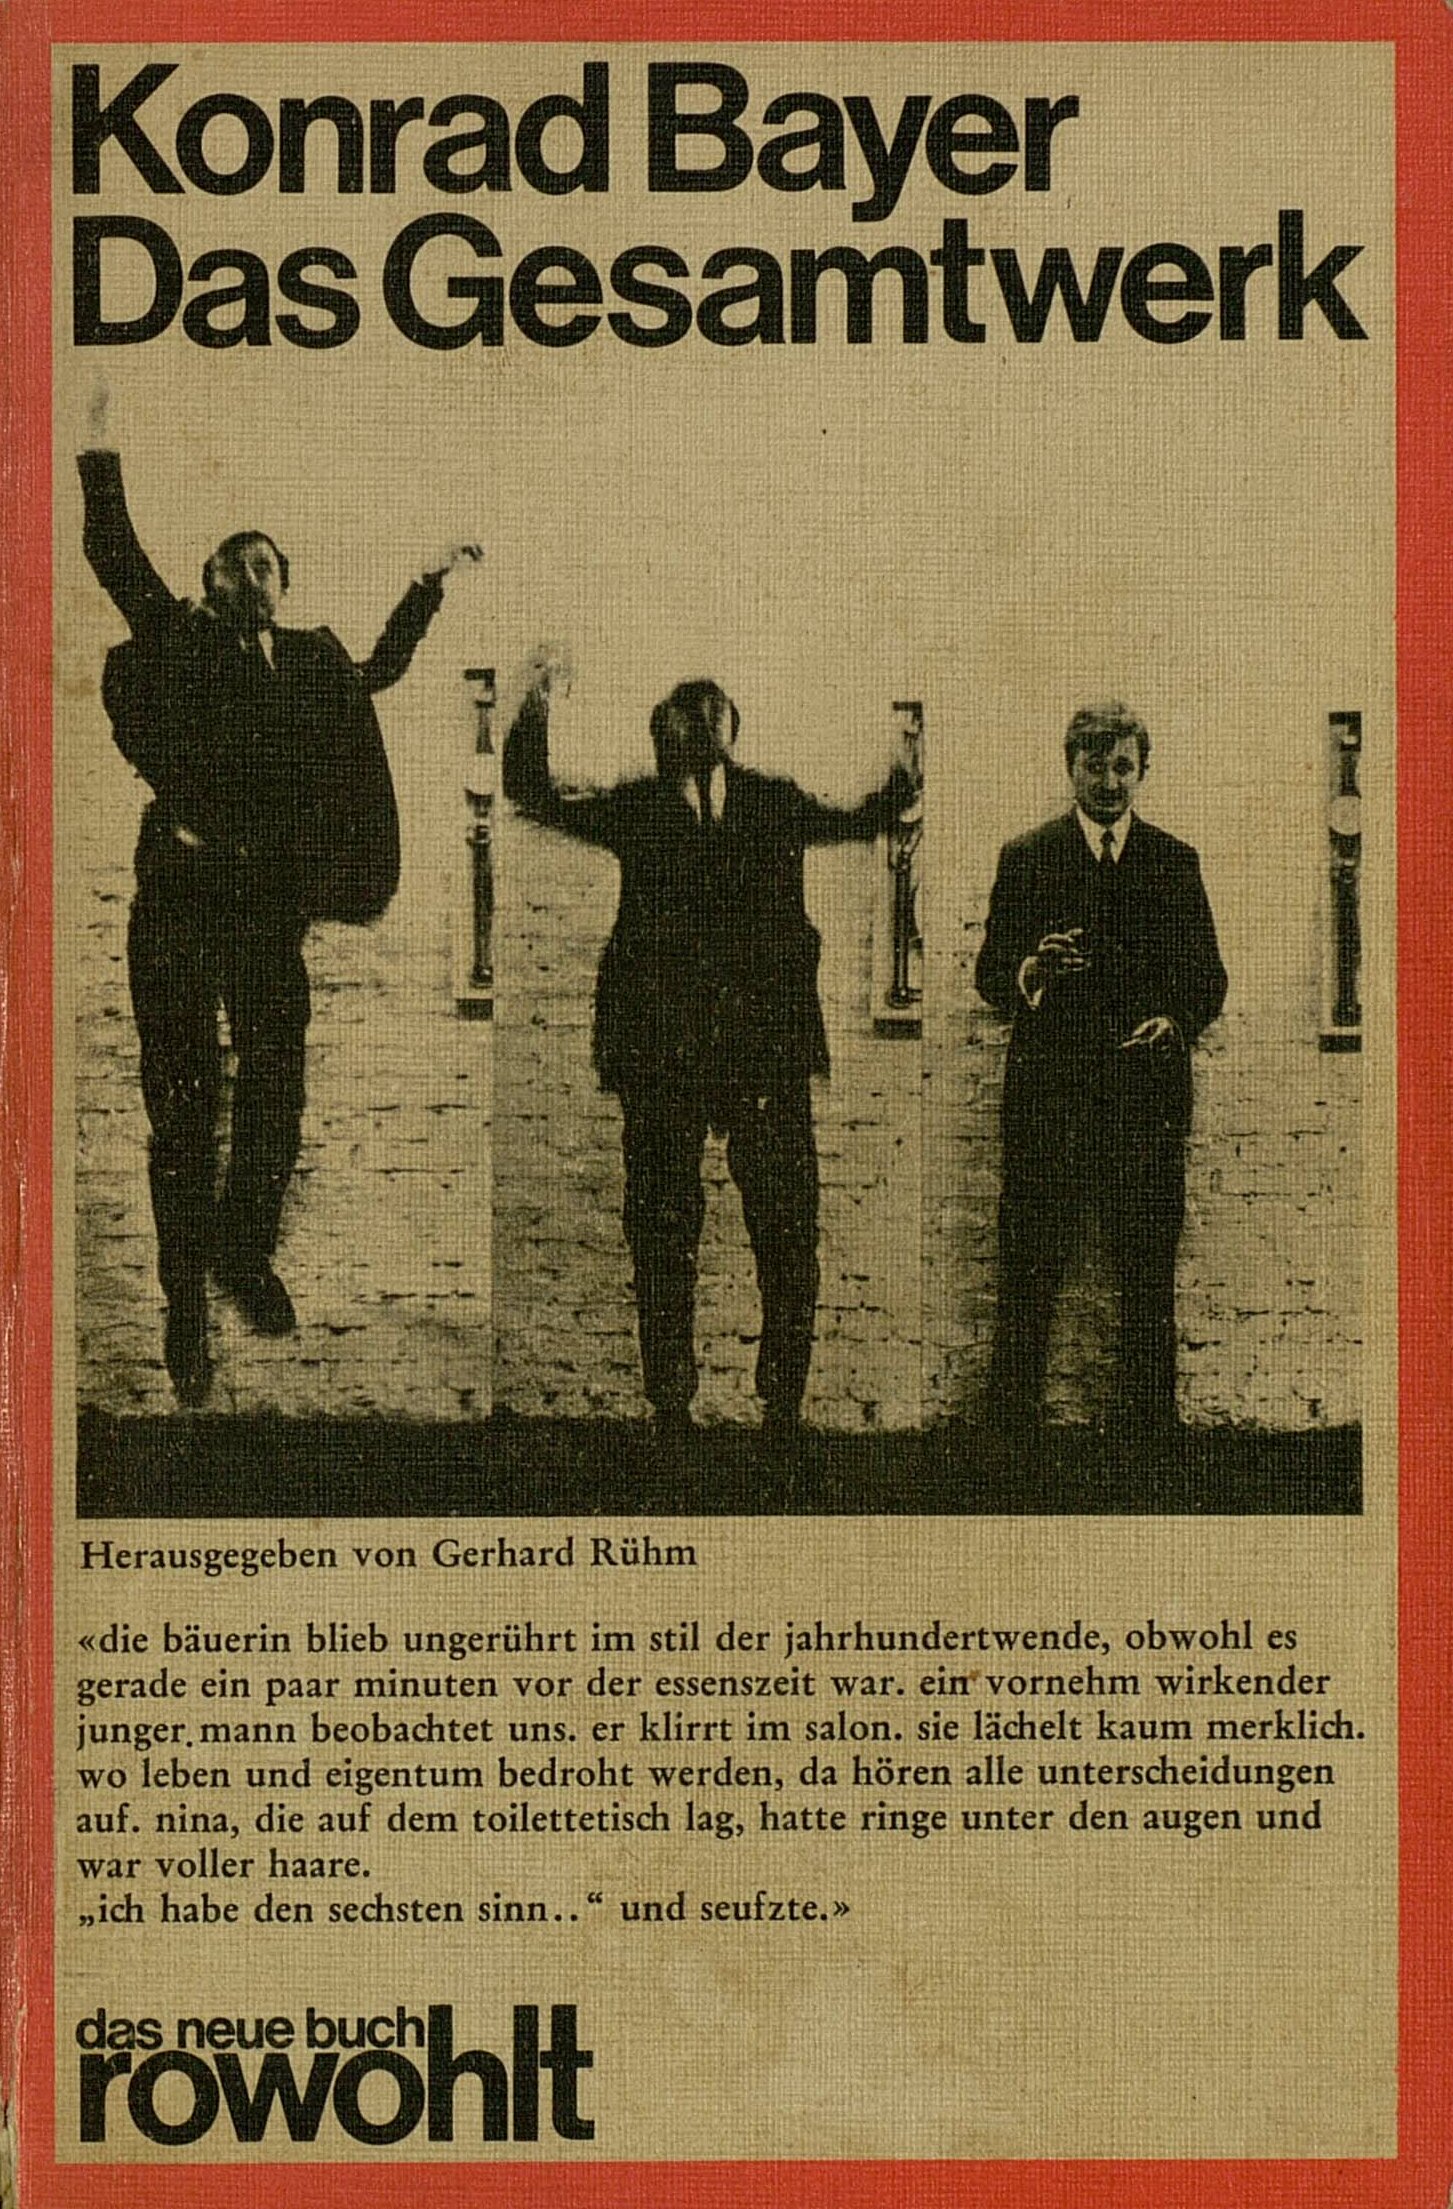 Werbung für Konrad Bayers Gedichtband "Das Gesamtwerk".